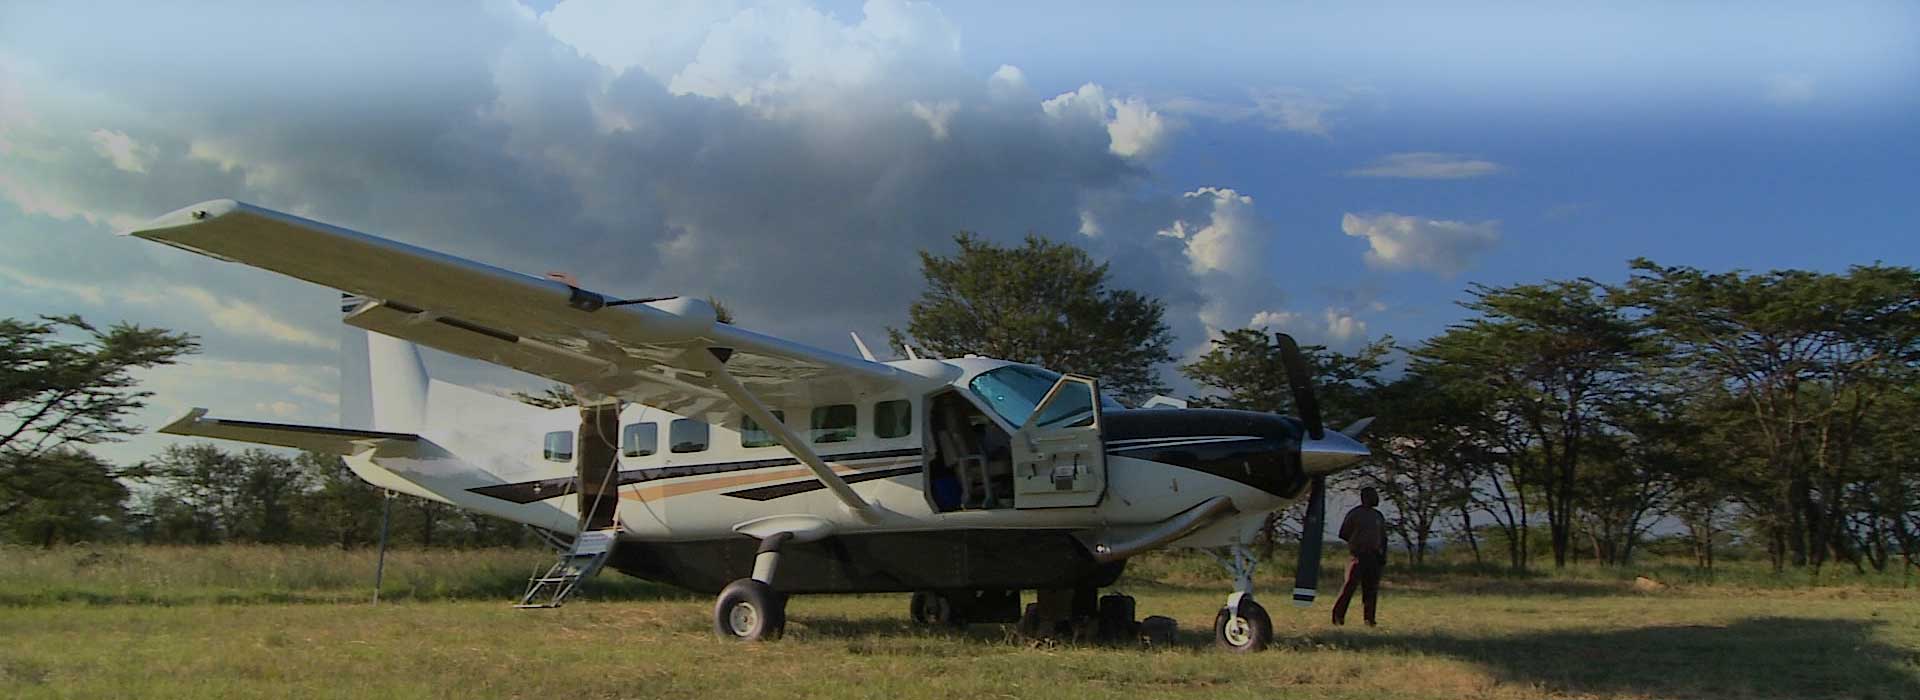 Kenya Kenya Fly-In Safaris